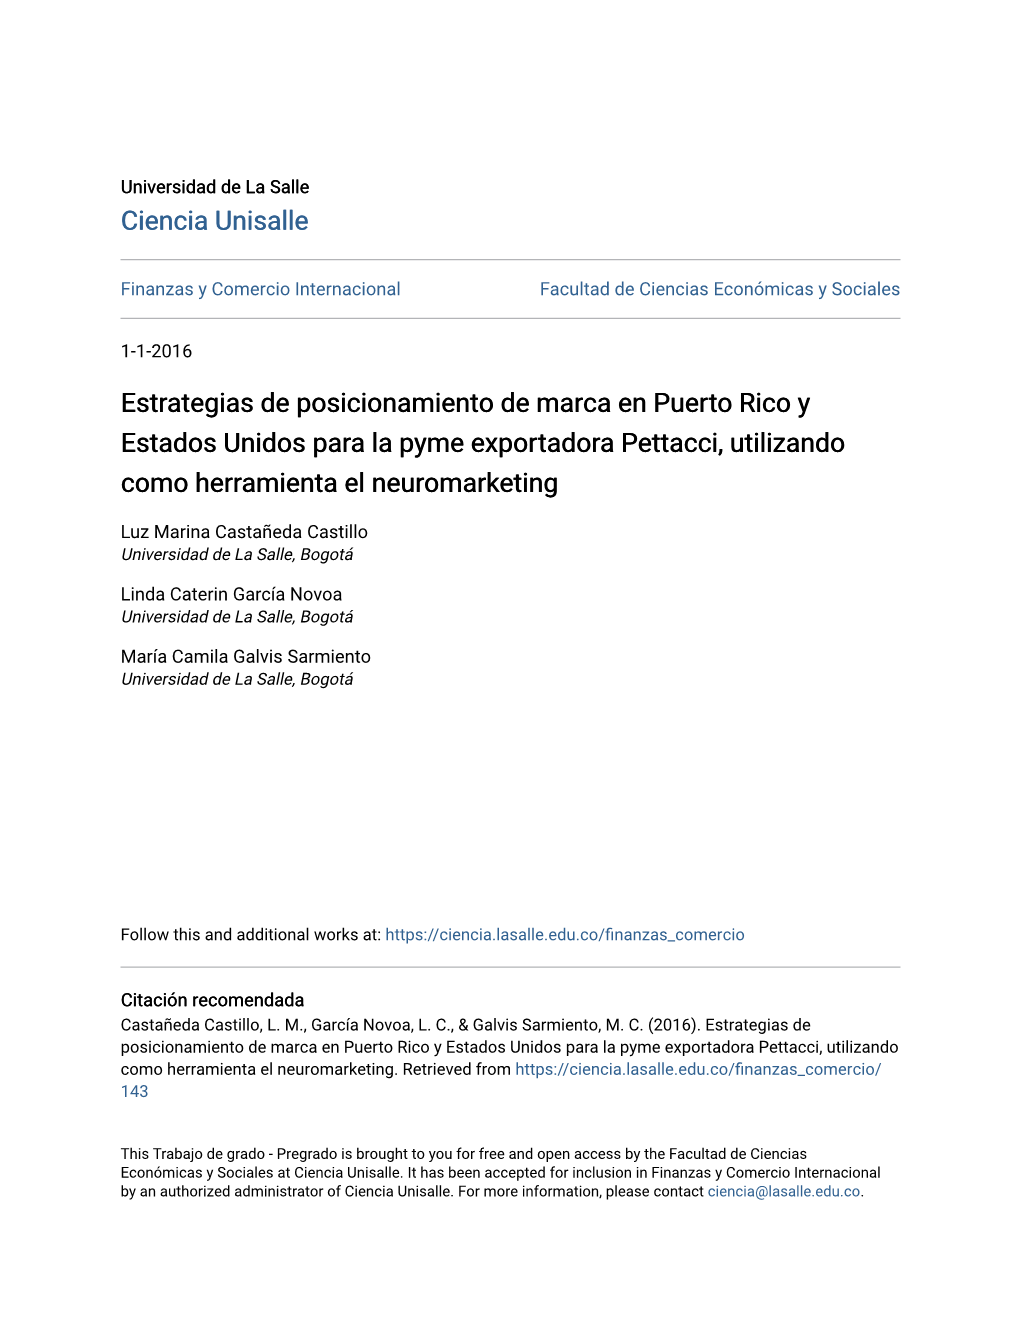 Estrategias De Posicionamiento De Marca En Puerto Rico Y Estados Unidos Para La Pyme Exportadora Pettacci, Utilizando Como Herramienta El Neuromarketing